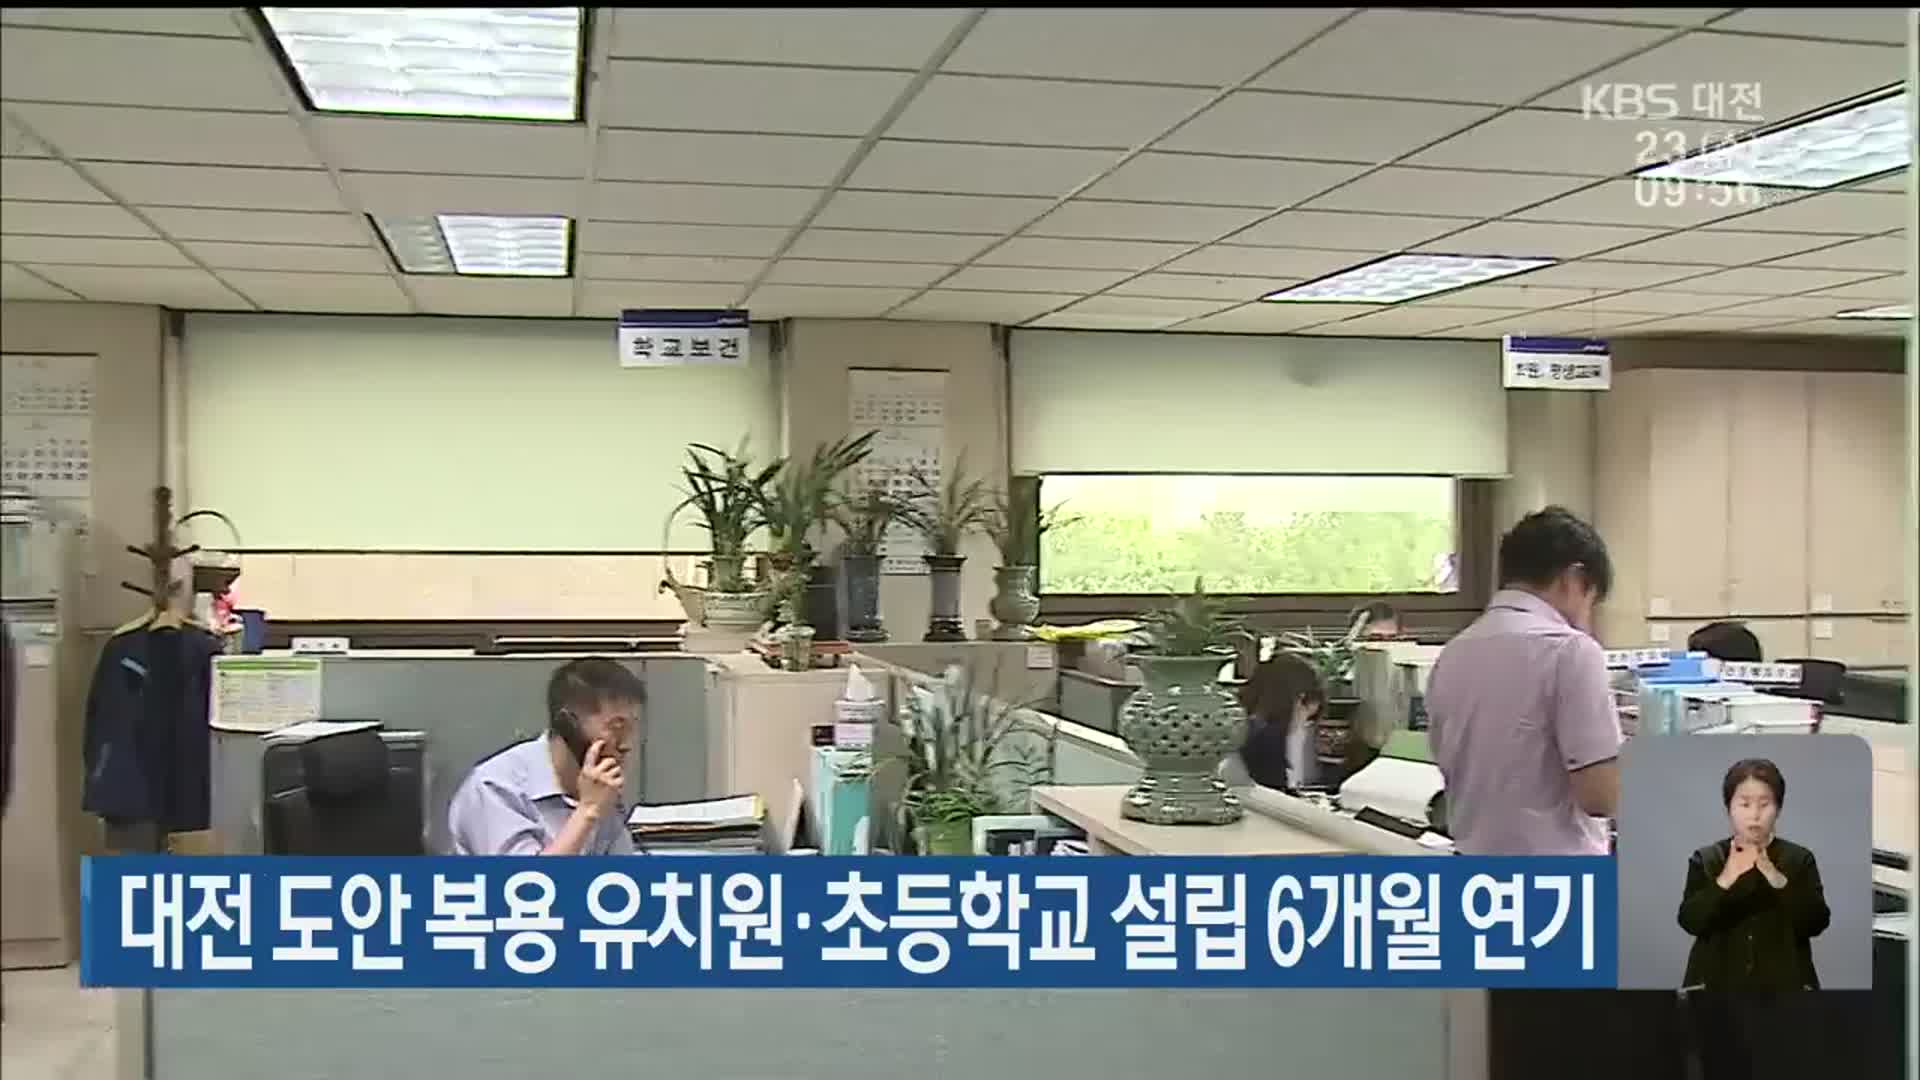 대전 도안 복용 유치원·초등학교 설립 6개월 연기